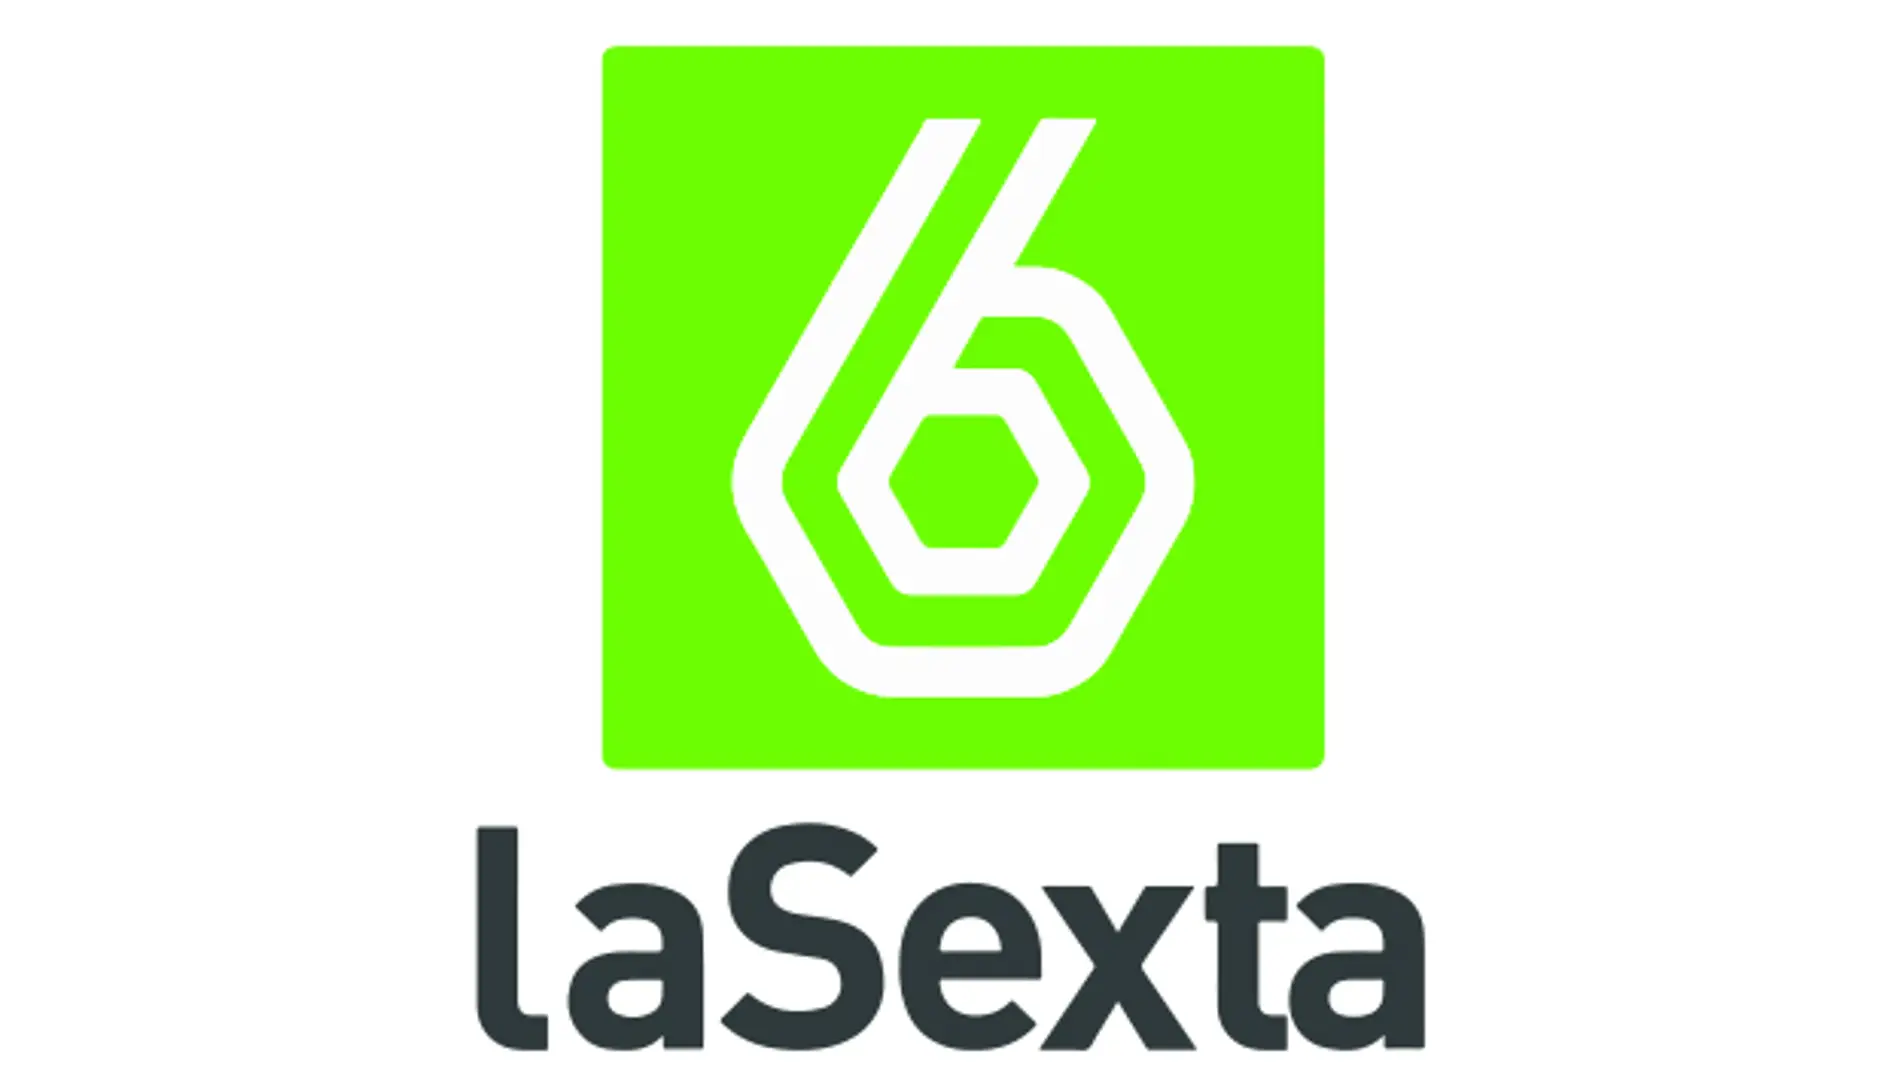 Logo laSexta